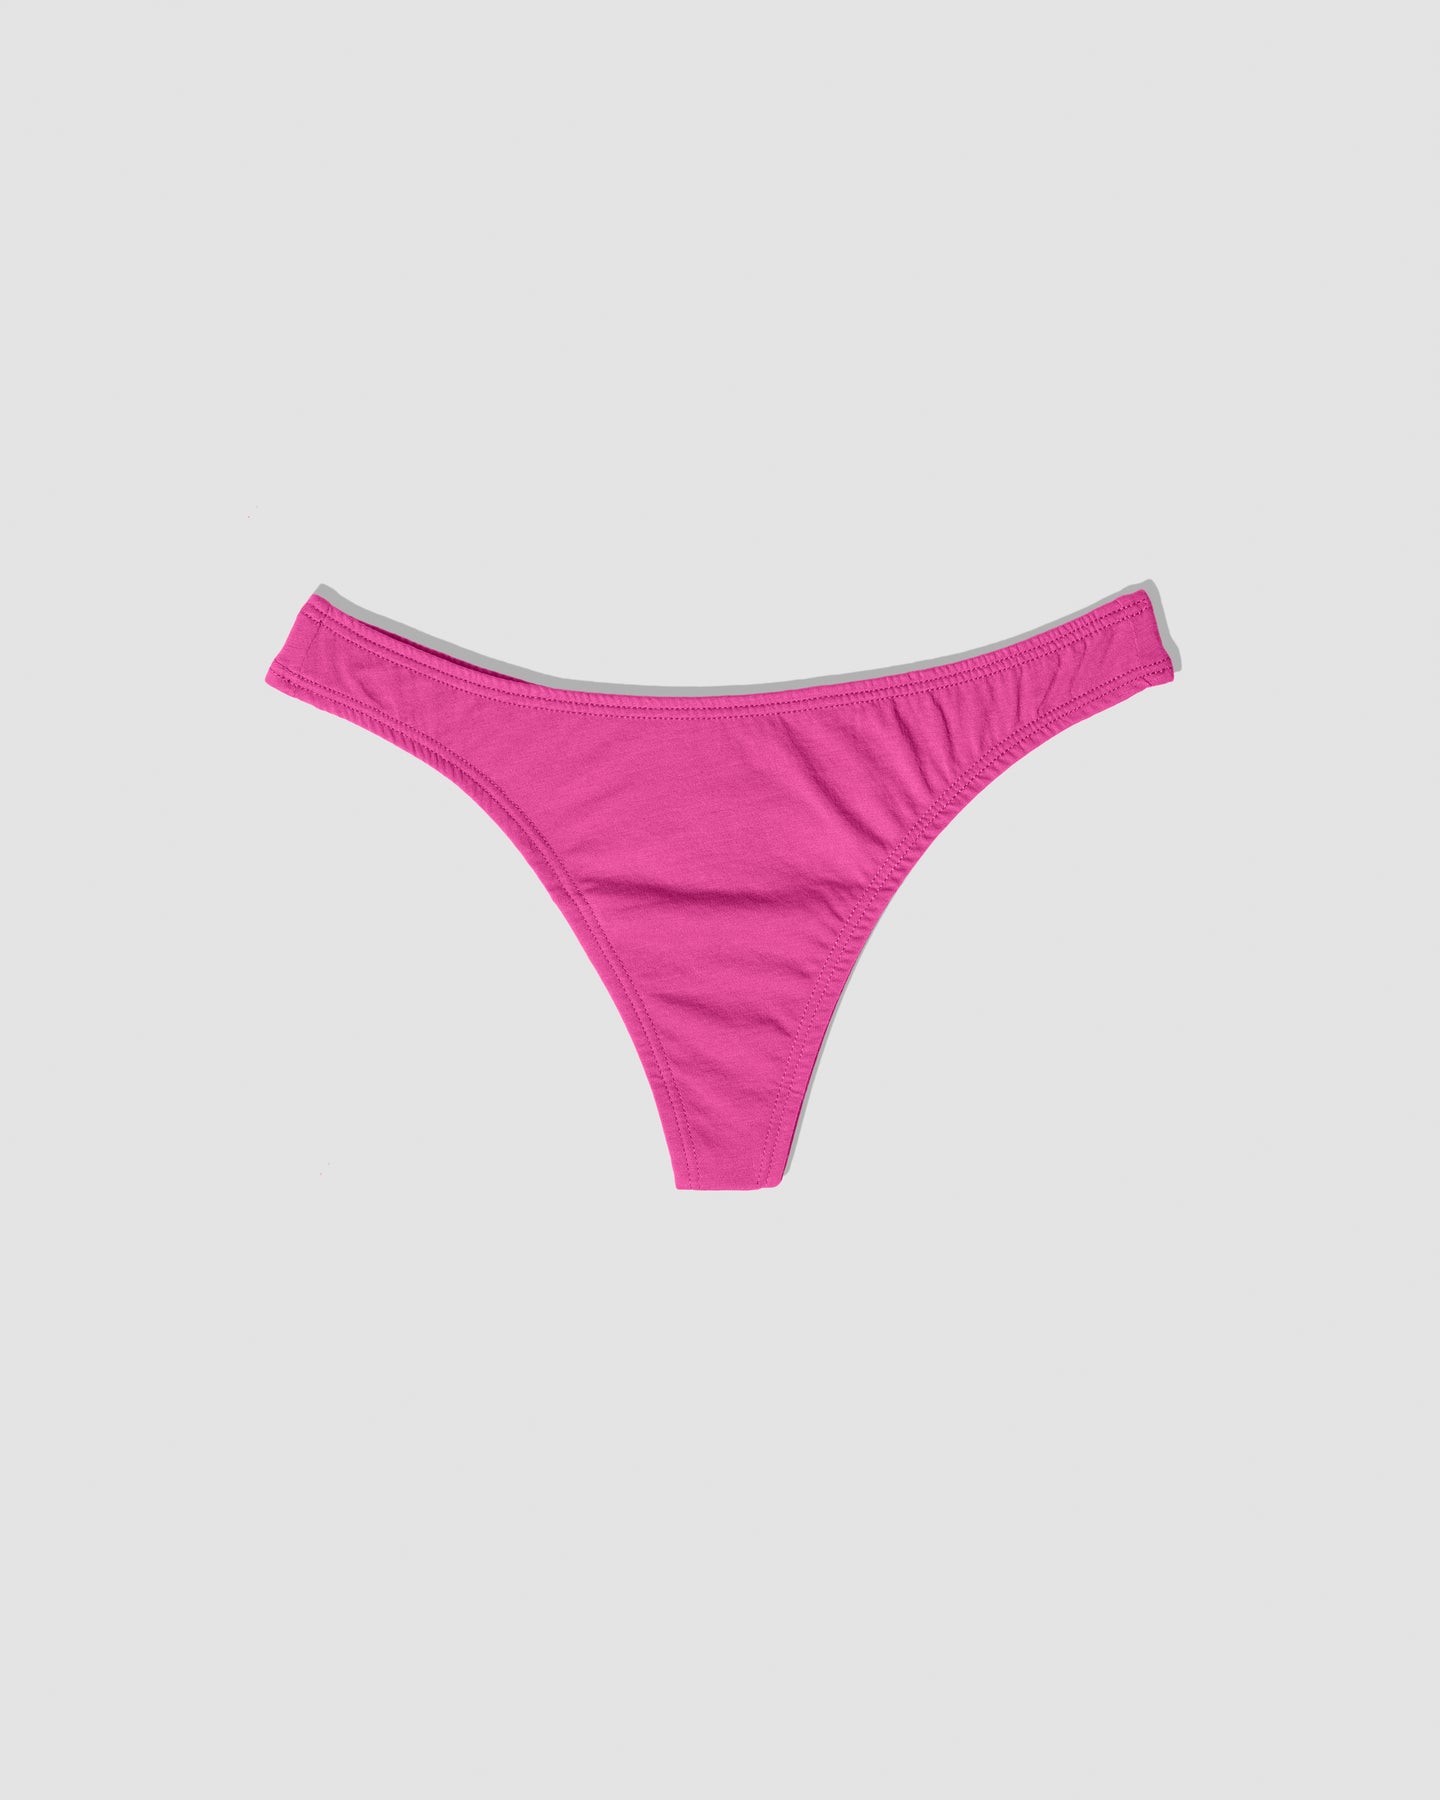 PINK Strap Panties for Women